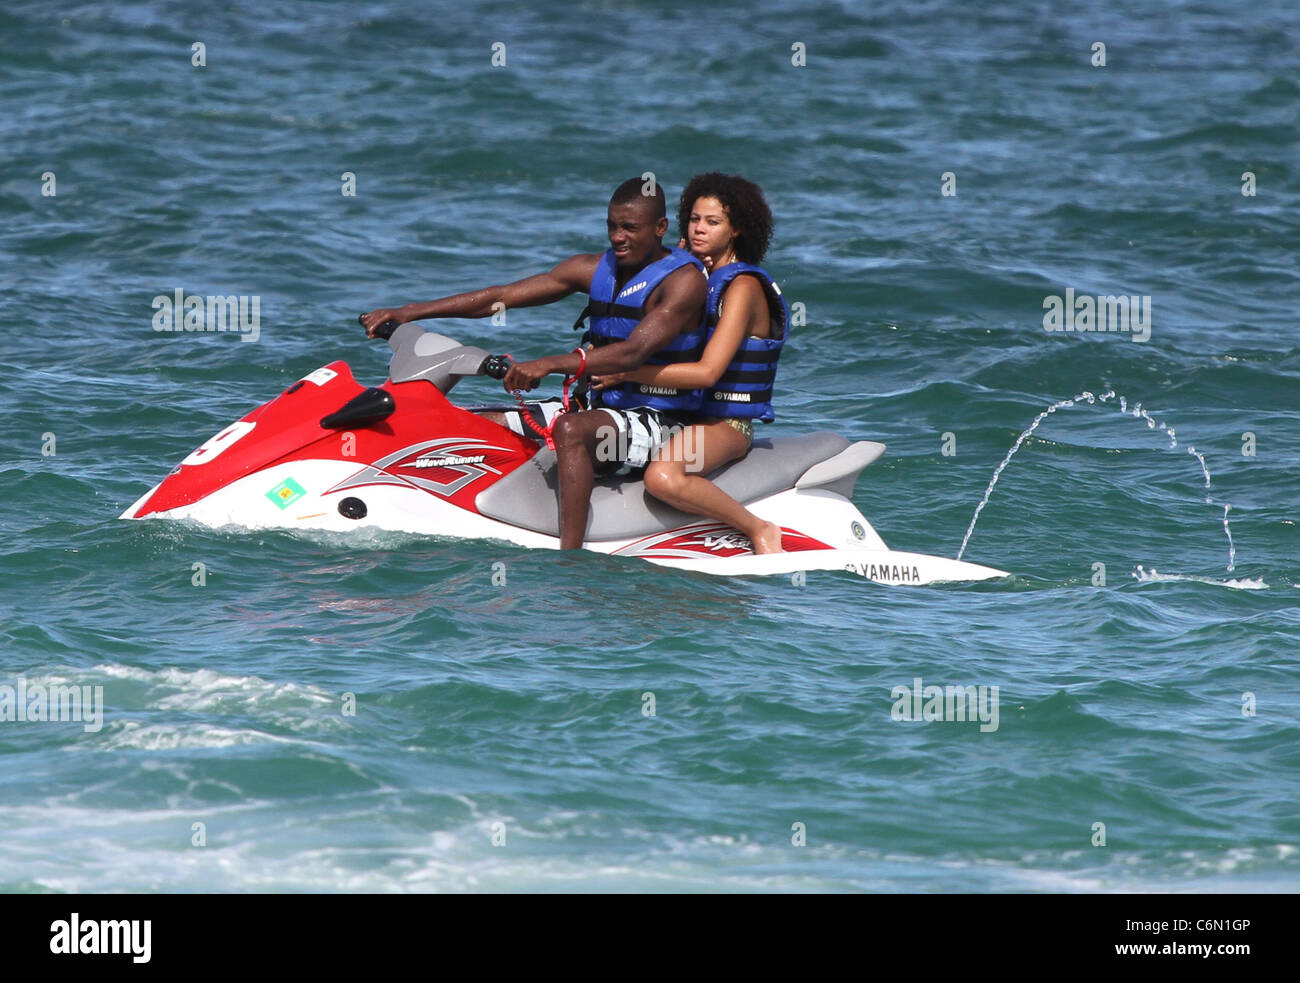 Chelsea footballer Salomon Kalou and girlfriend Anedie Azael on a jet-ski  while enjoying a beach break Miami Beach, Florida Stock Photo - Alamy